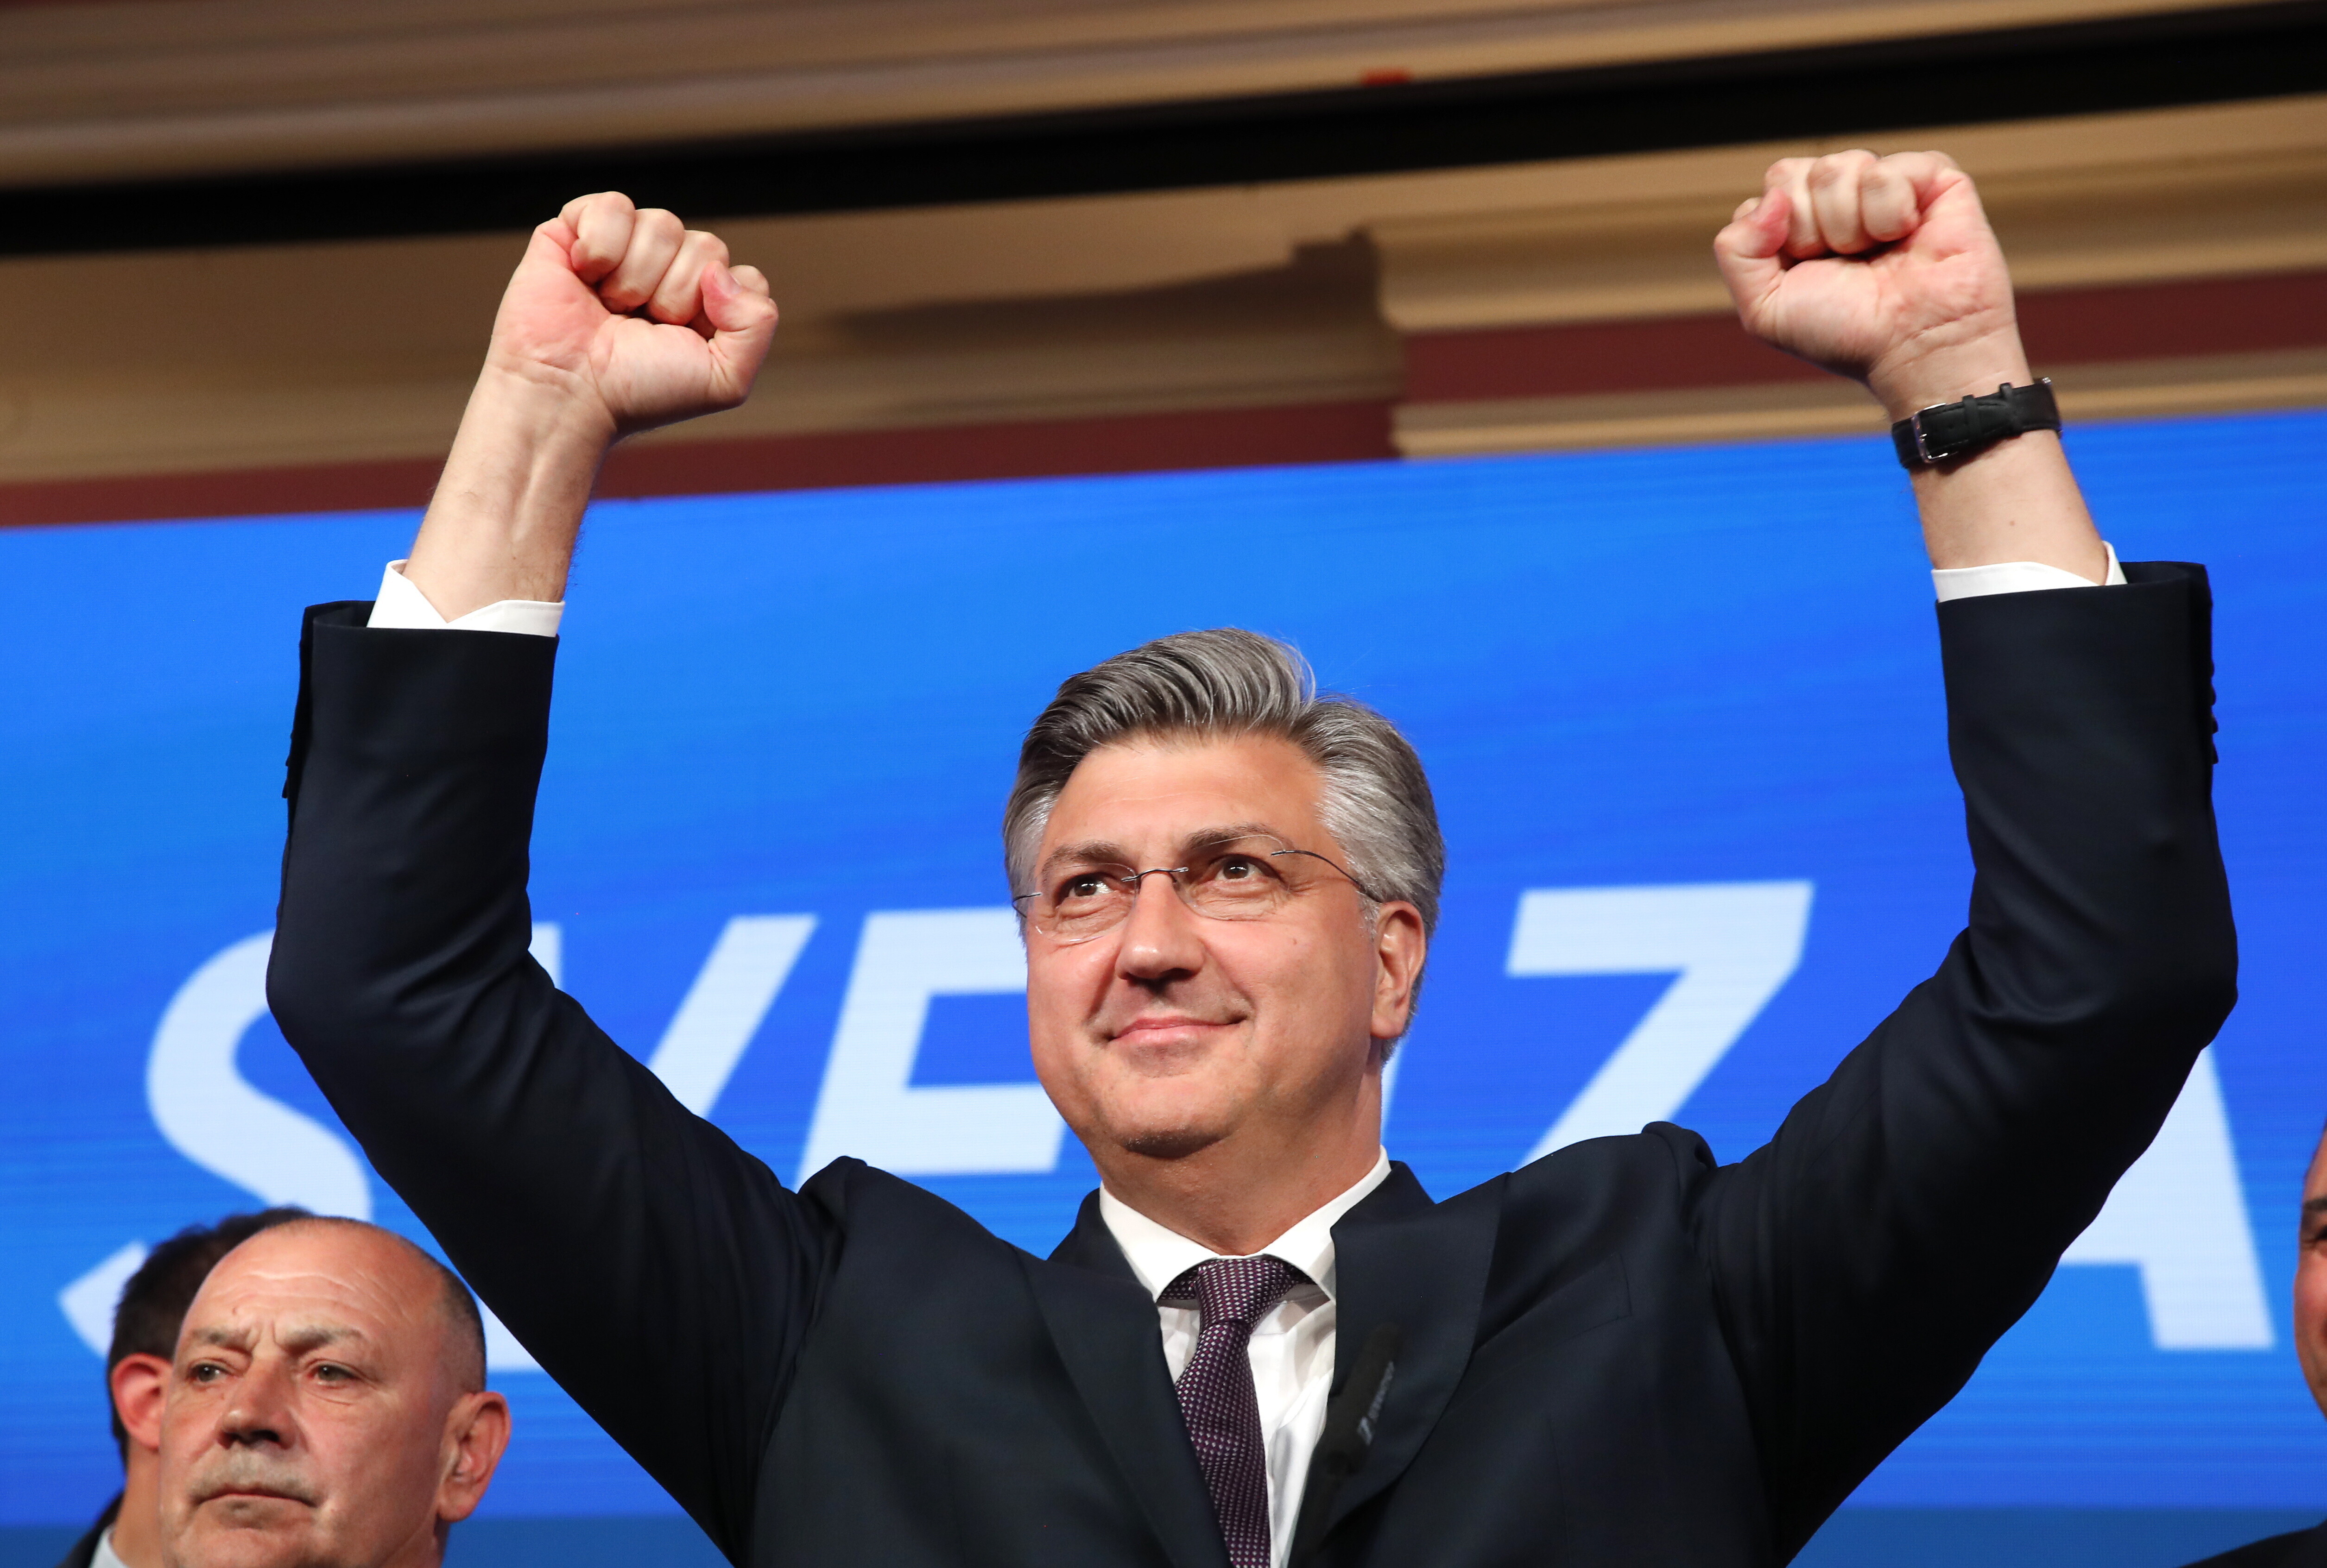 Elezioni in Croazia: uno spostamento politico a destra